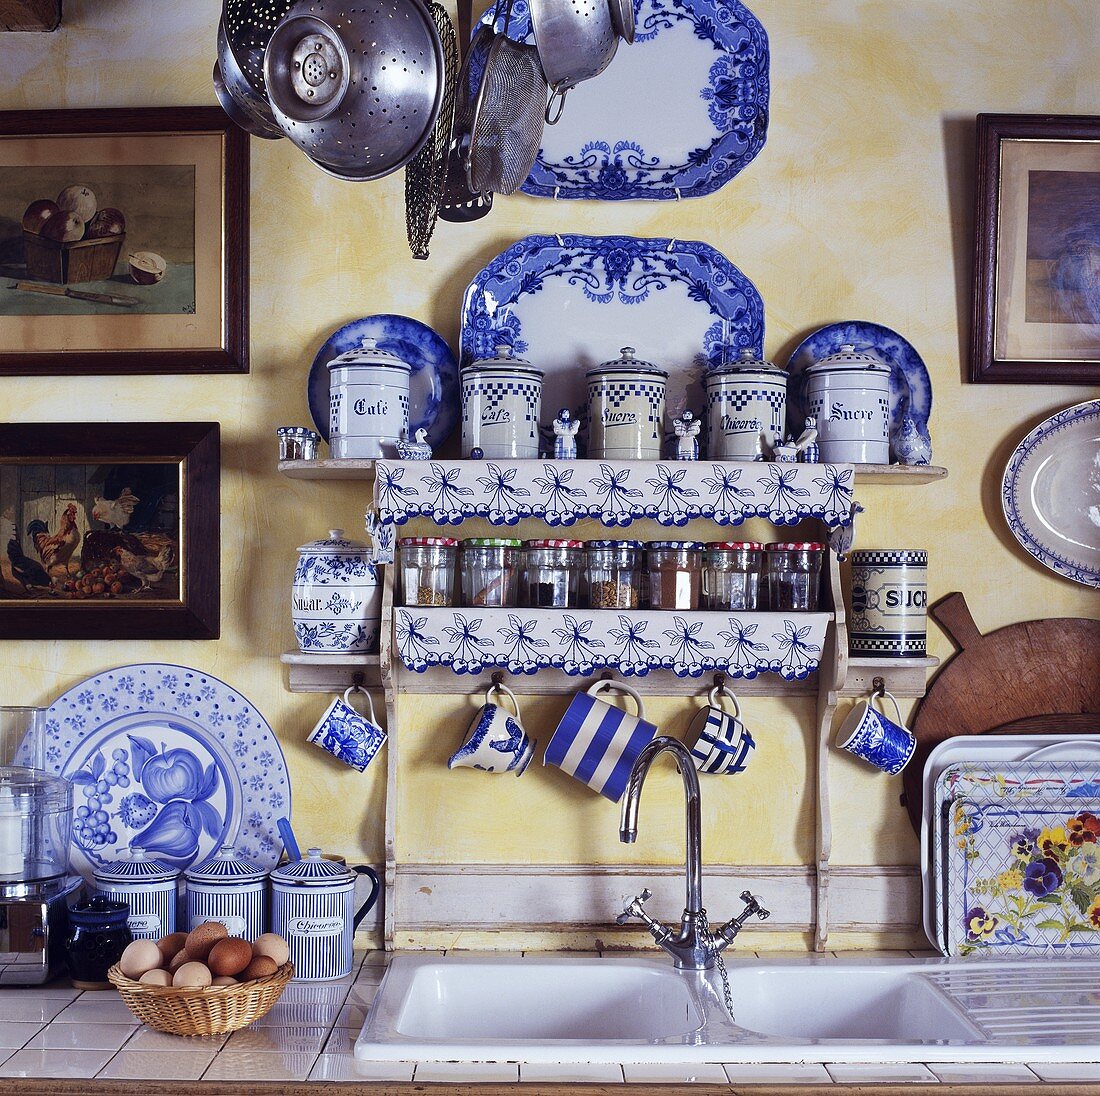 Gewürzregal und blau-weisses Geschirr über dem Spülbecken in einer Küche